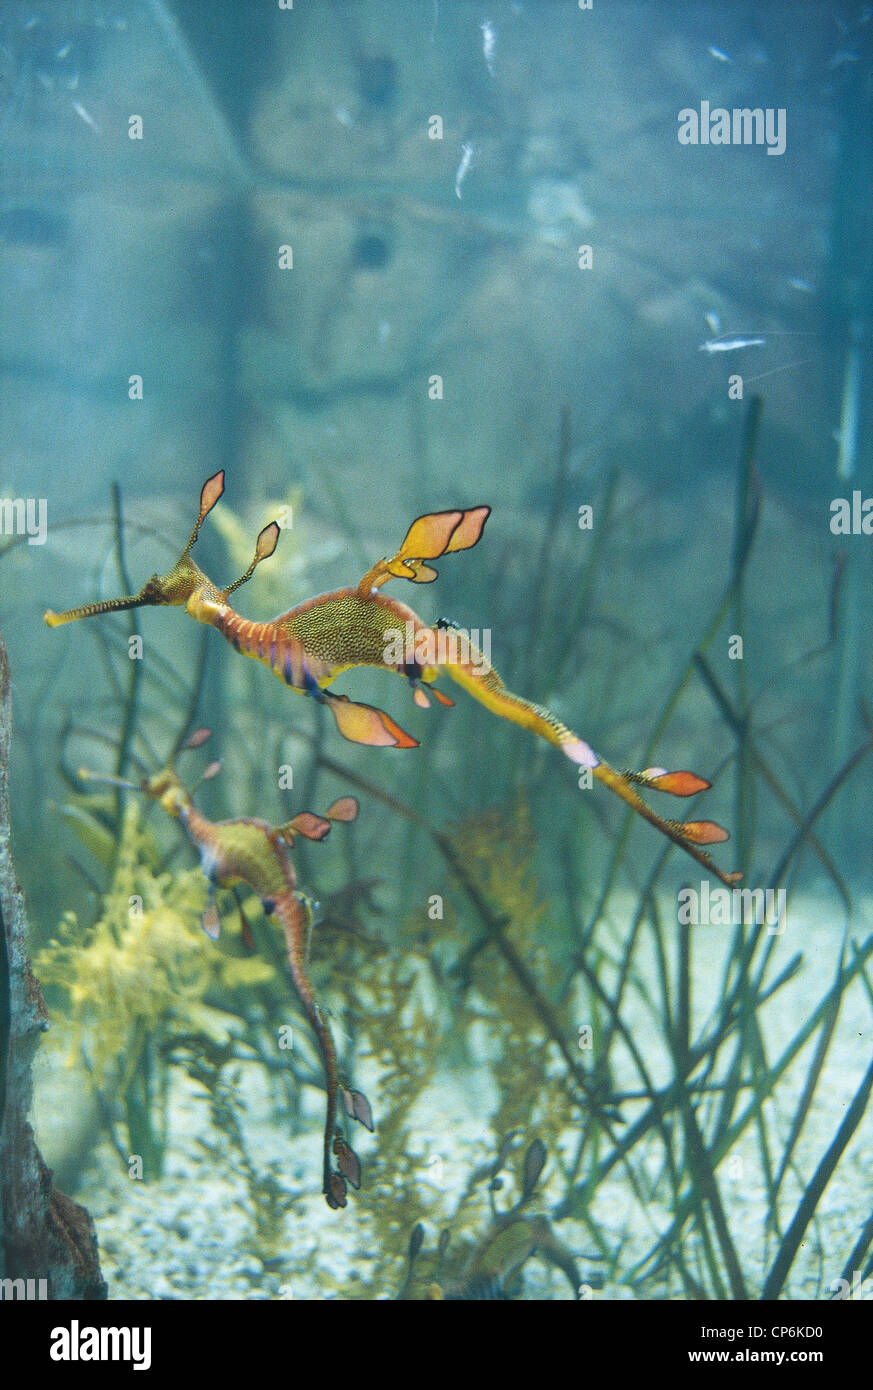 Republic of Singapore - Sentosa Island - Underwater World Aquarium Tropical, seahorse Stock Photo